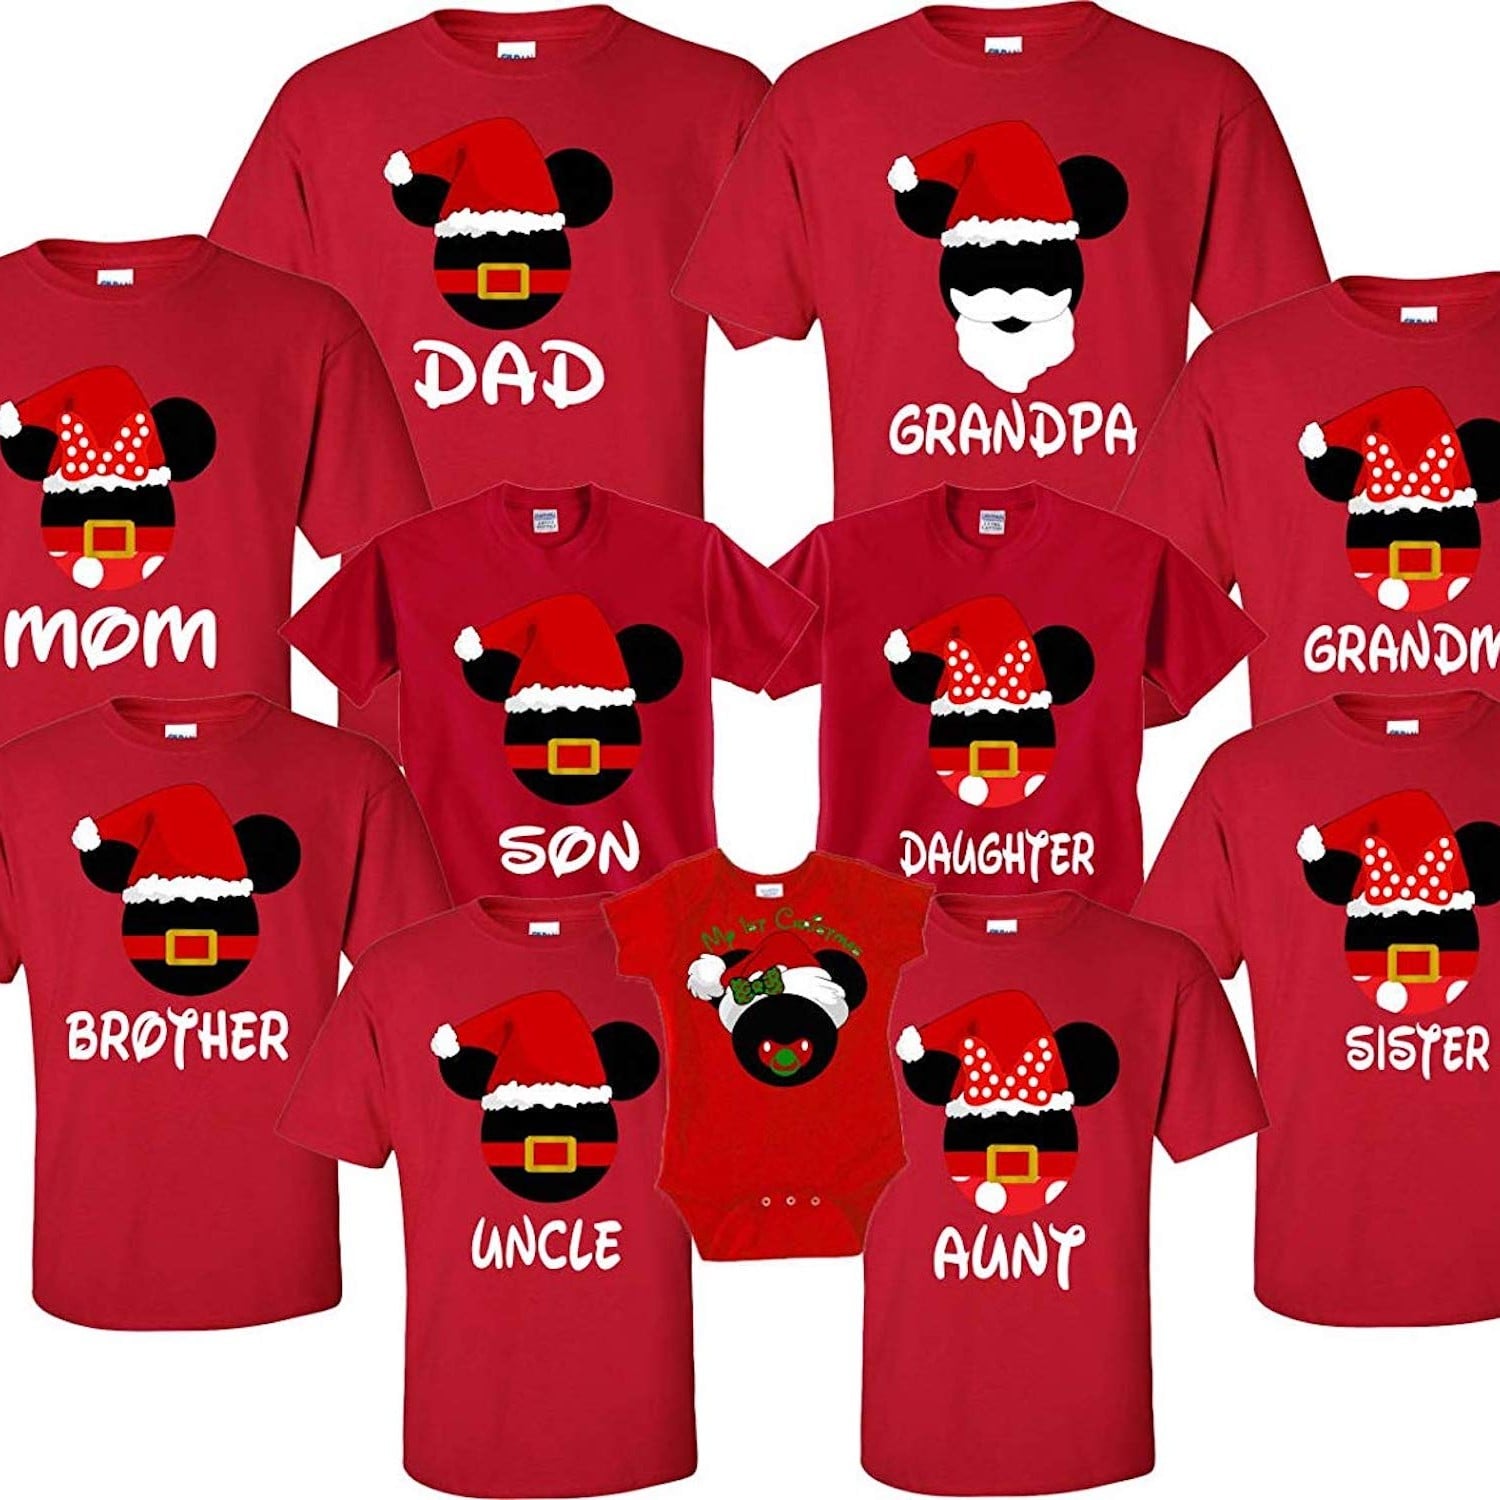 Christmas Squad Customizable Tshirts Family vacation shirts Holiday Season Sibling Matching Tees